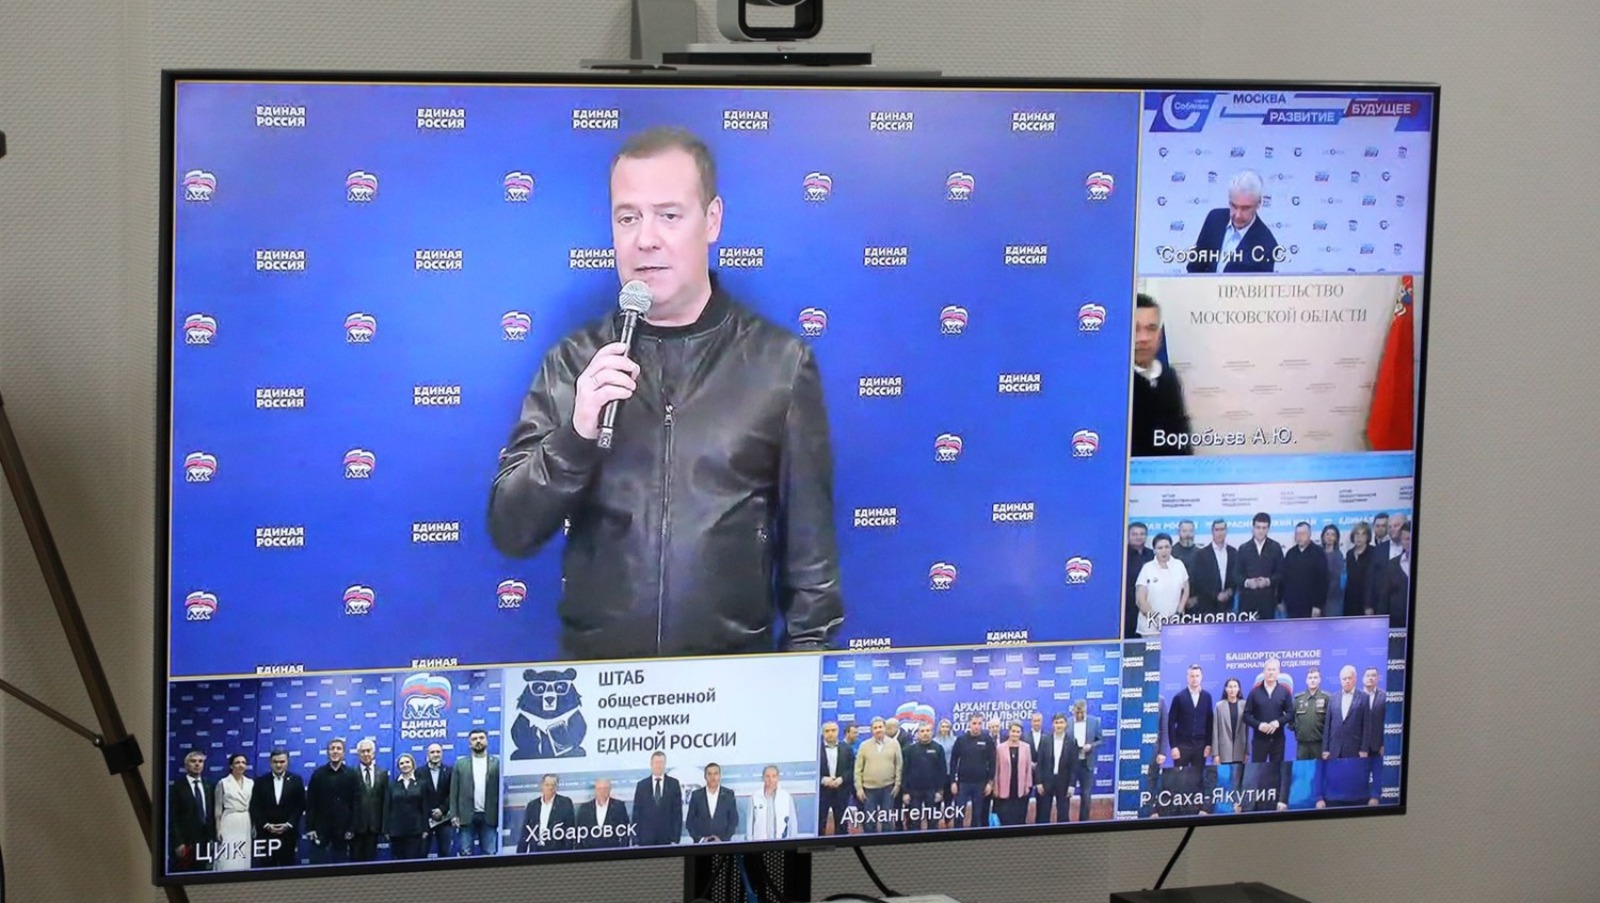 Дмитрий Медведев поздравил Главу Башкирии и его команду с хорошим результатом на выборах